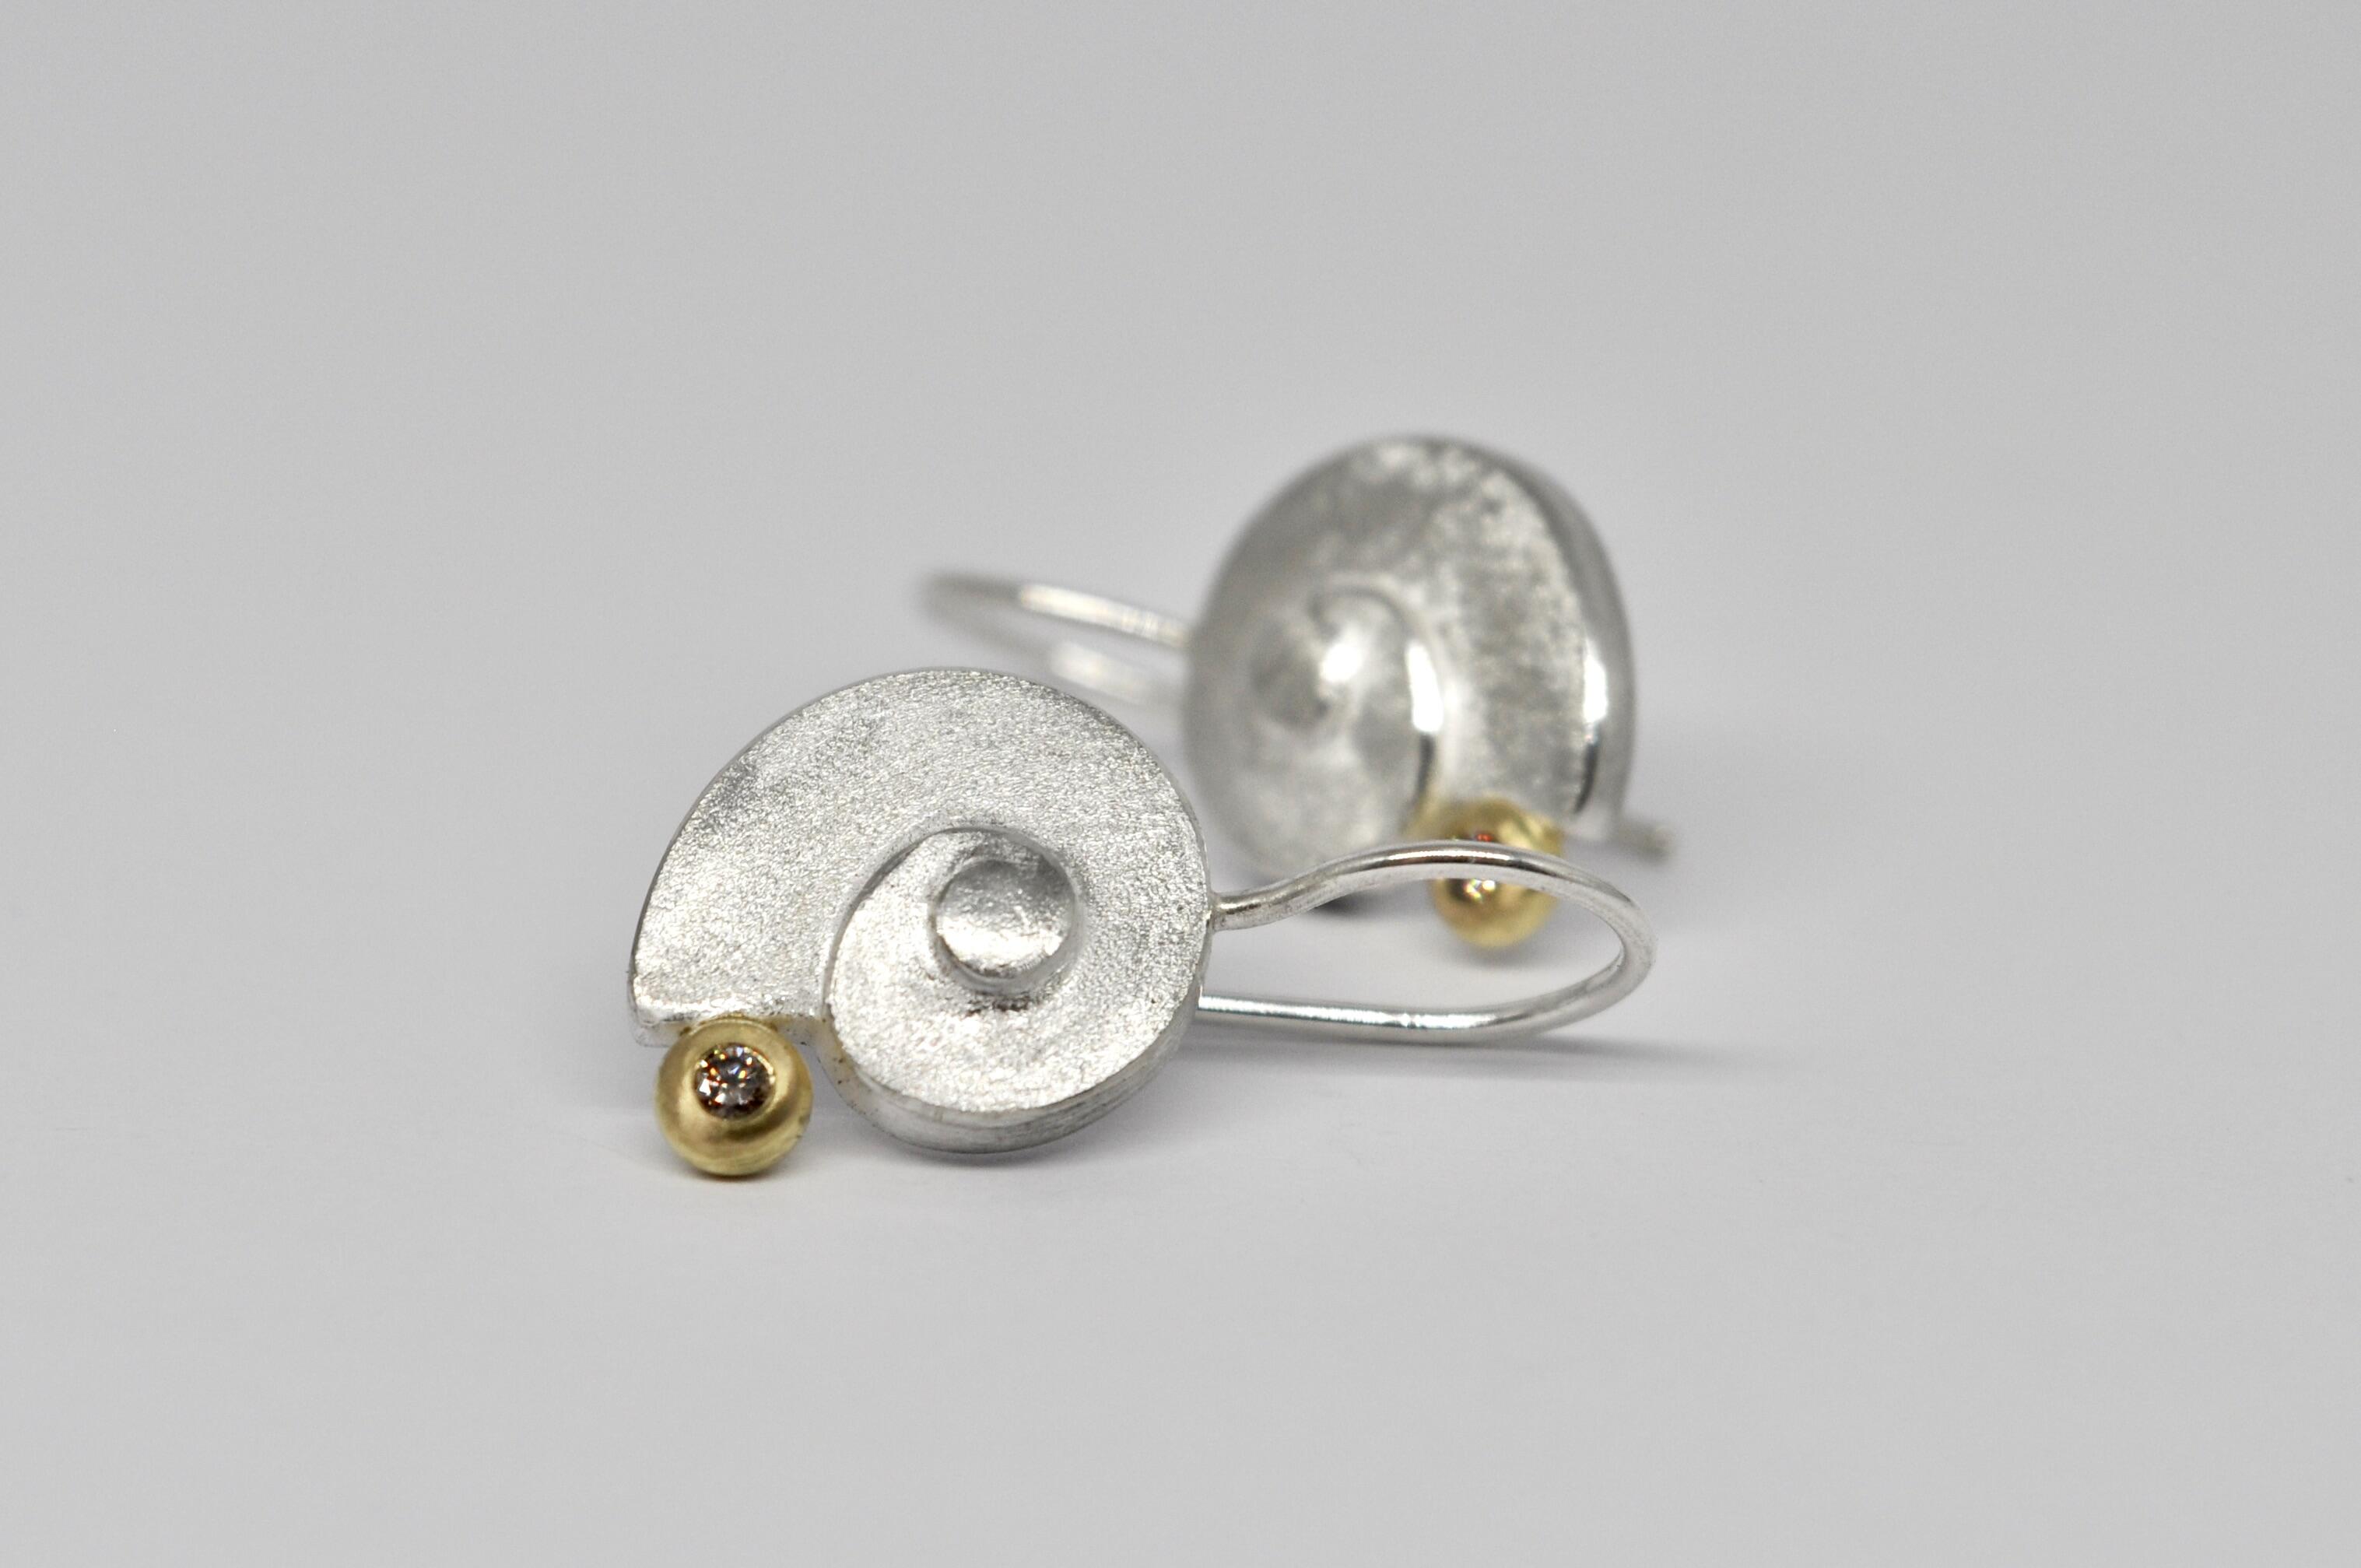 Schnecken Ohrringe in Silber, Gold, braune Diamanten